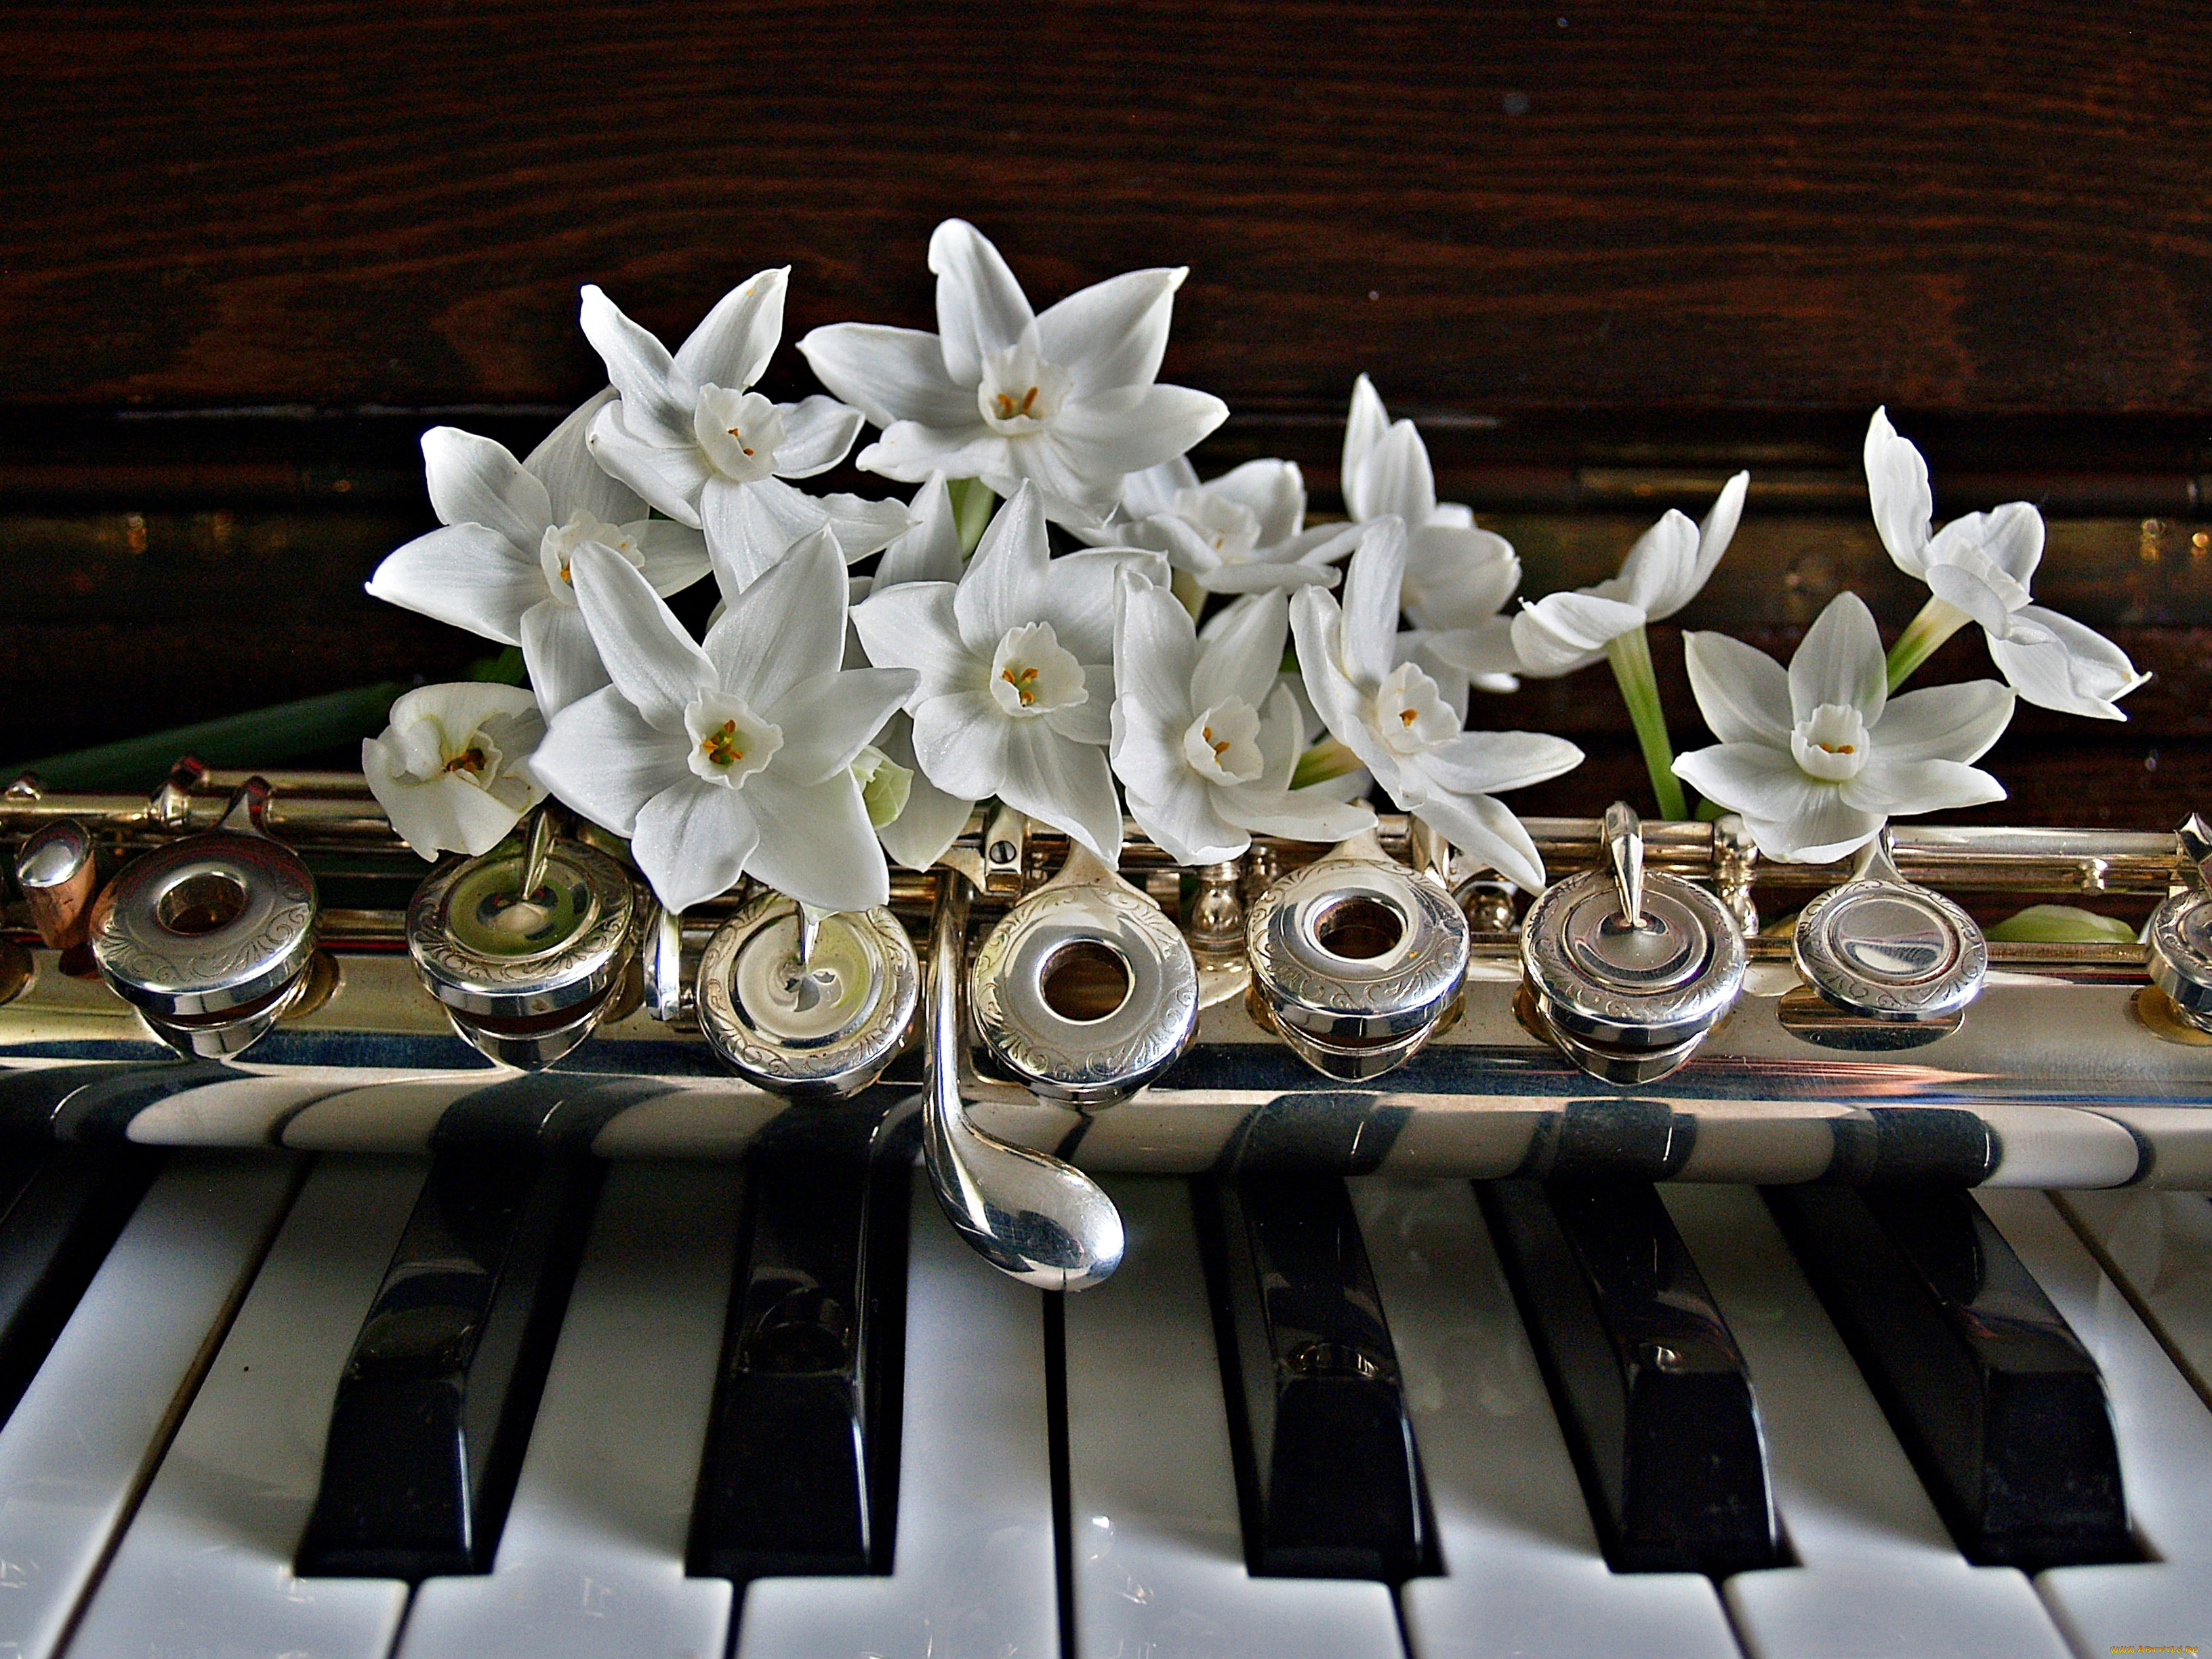 Найти красивейшую музыку. Музыкальные инструменты и цветы. Музыкальный букет цветов. Цветы для музыканта. Цветы на рояле.